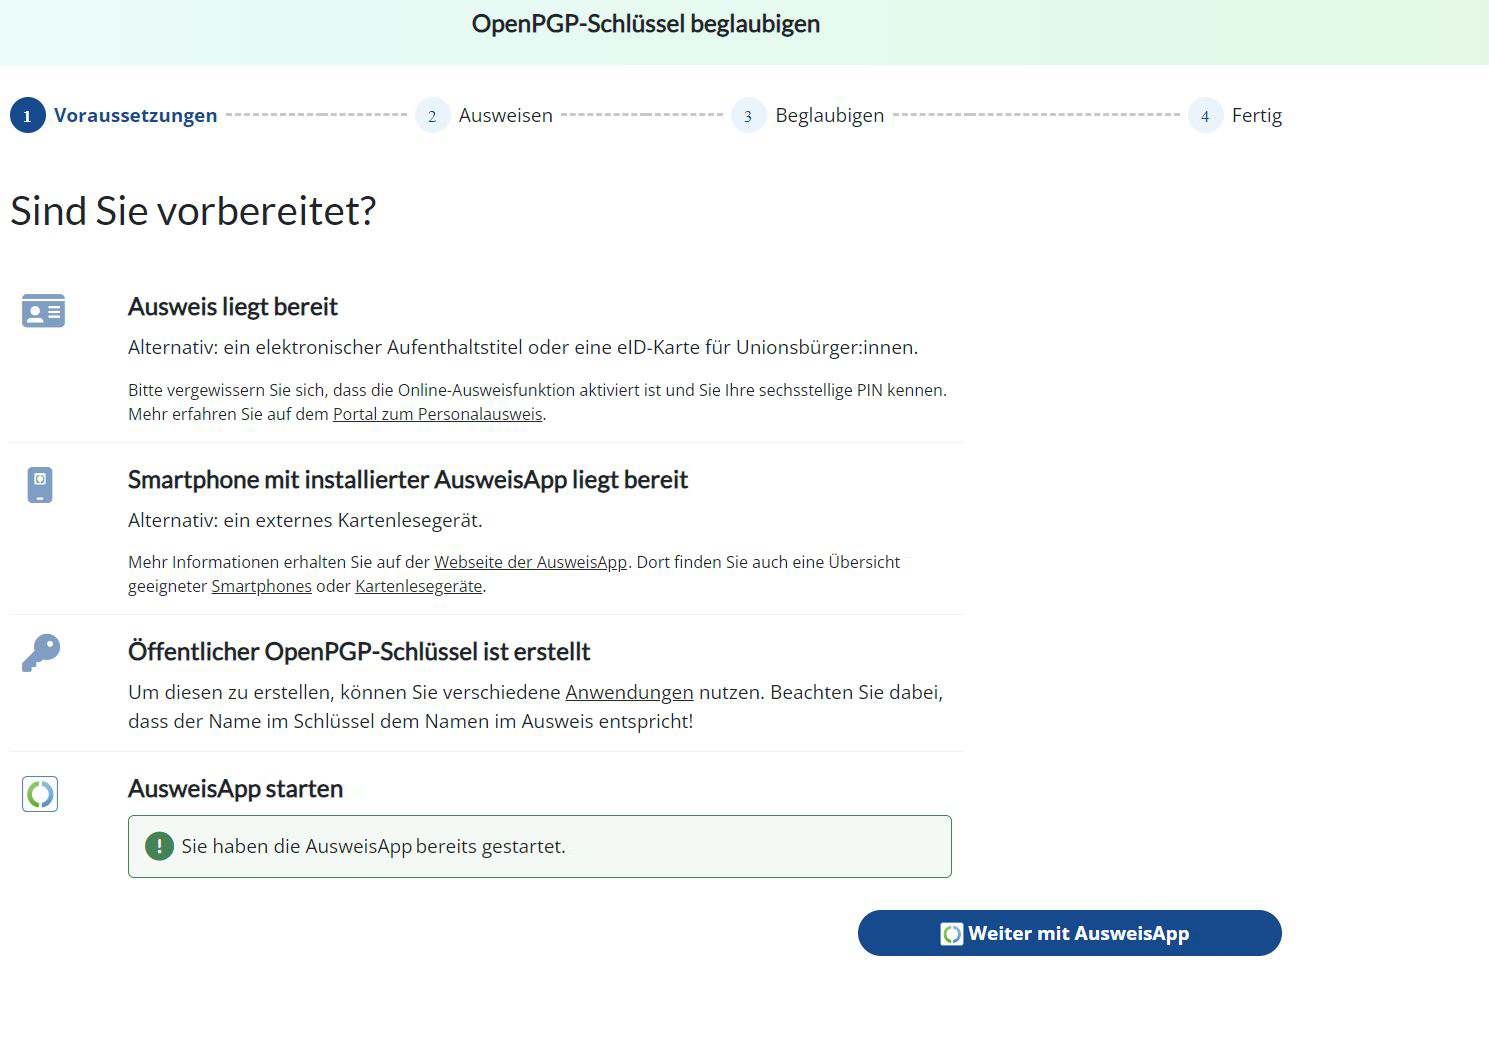 Screenshot zeigt Voraussetzungen für die Nutzung der Online-Ausweisfunktion